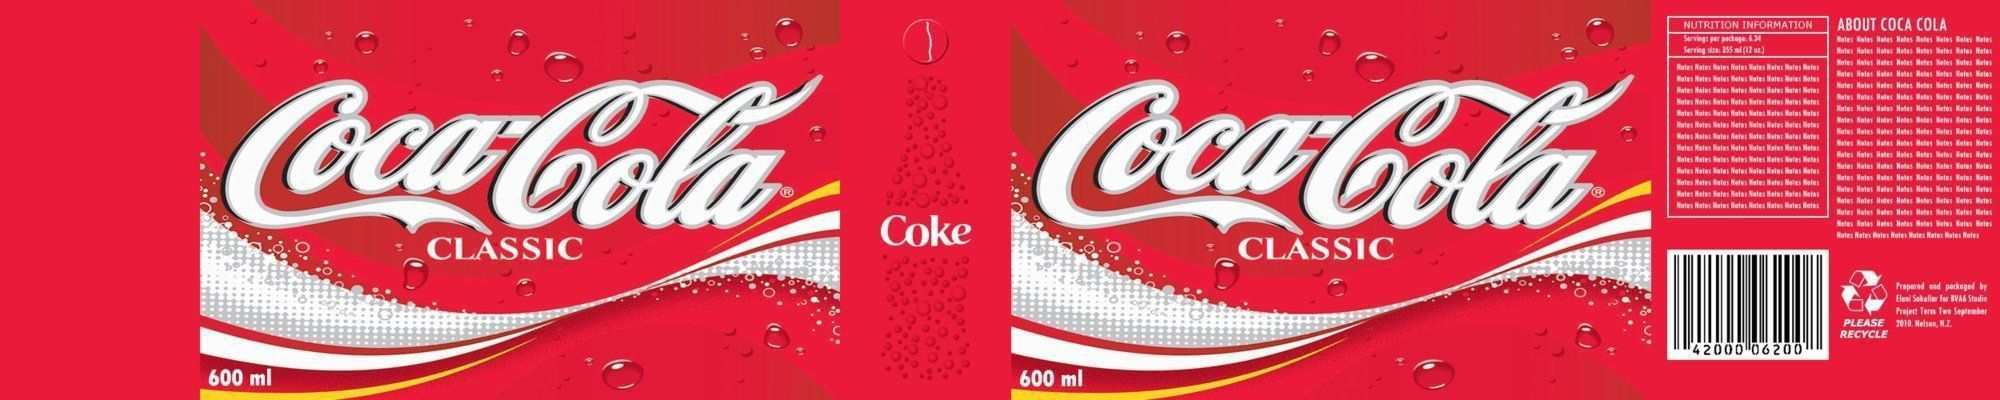 Cola Kann Etikette Vorlage Best Of Larg0theawesome Larg0theawesome Cola Label Coke Can Label Vorlage Best Of Larg0theawesome Larg0theawesome Cola